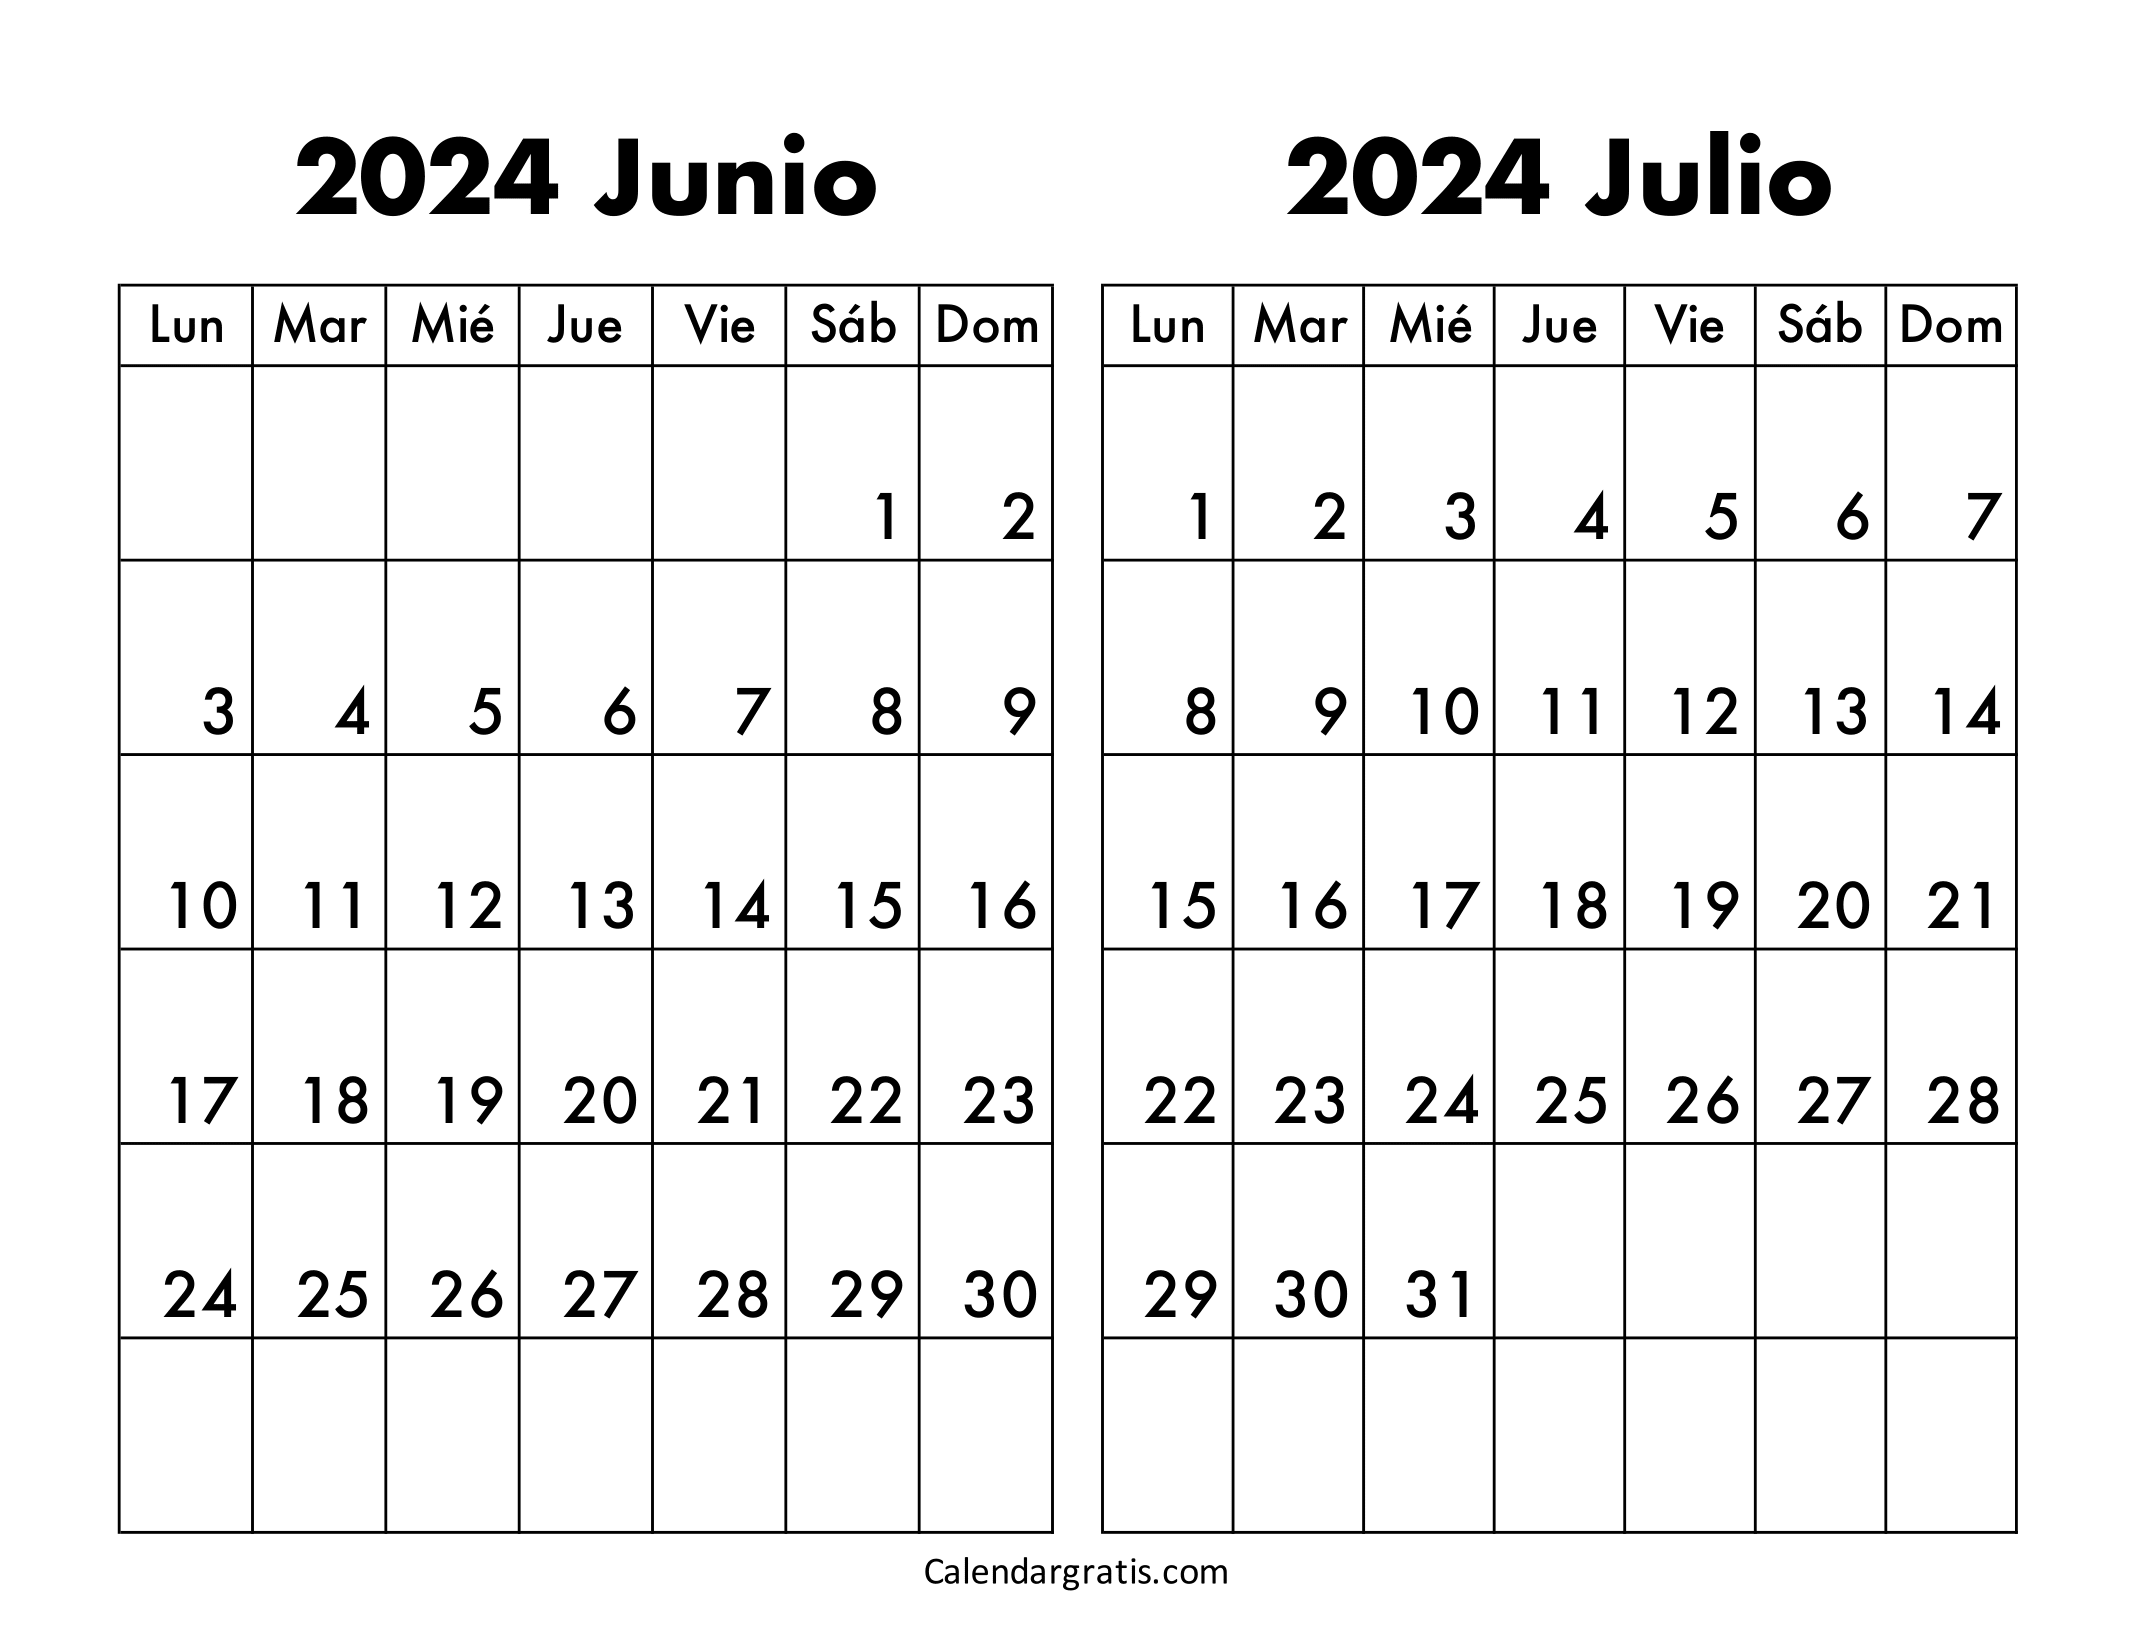 Calendario junio y julio 2024 para imprimir